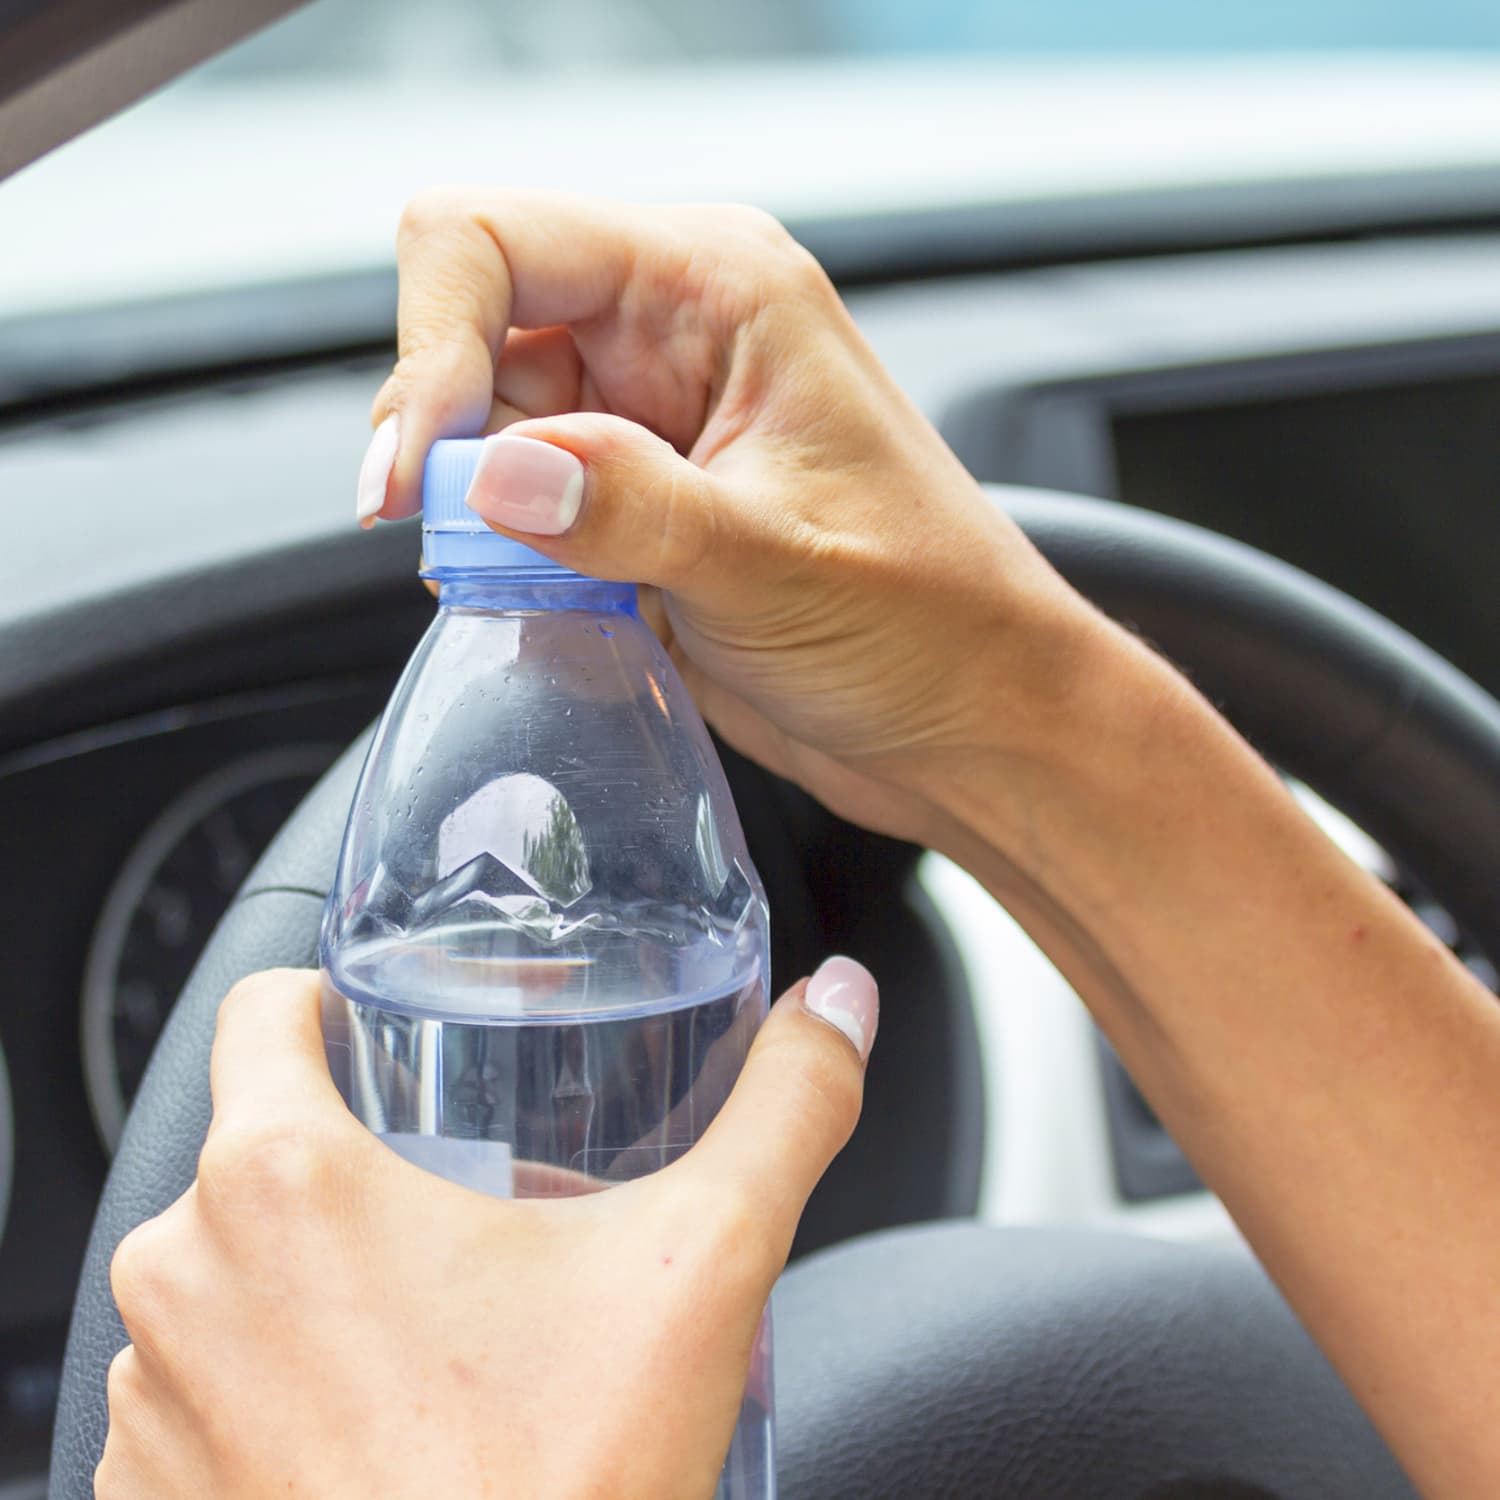 Бутылка воды в руке. Бутылка воды в машине. Машина в воде. Бутылка воды в руке девушки. Жара в машине.